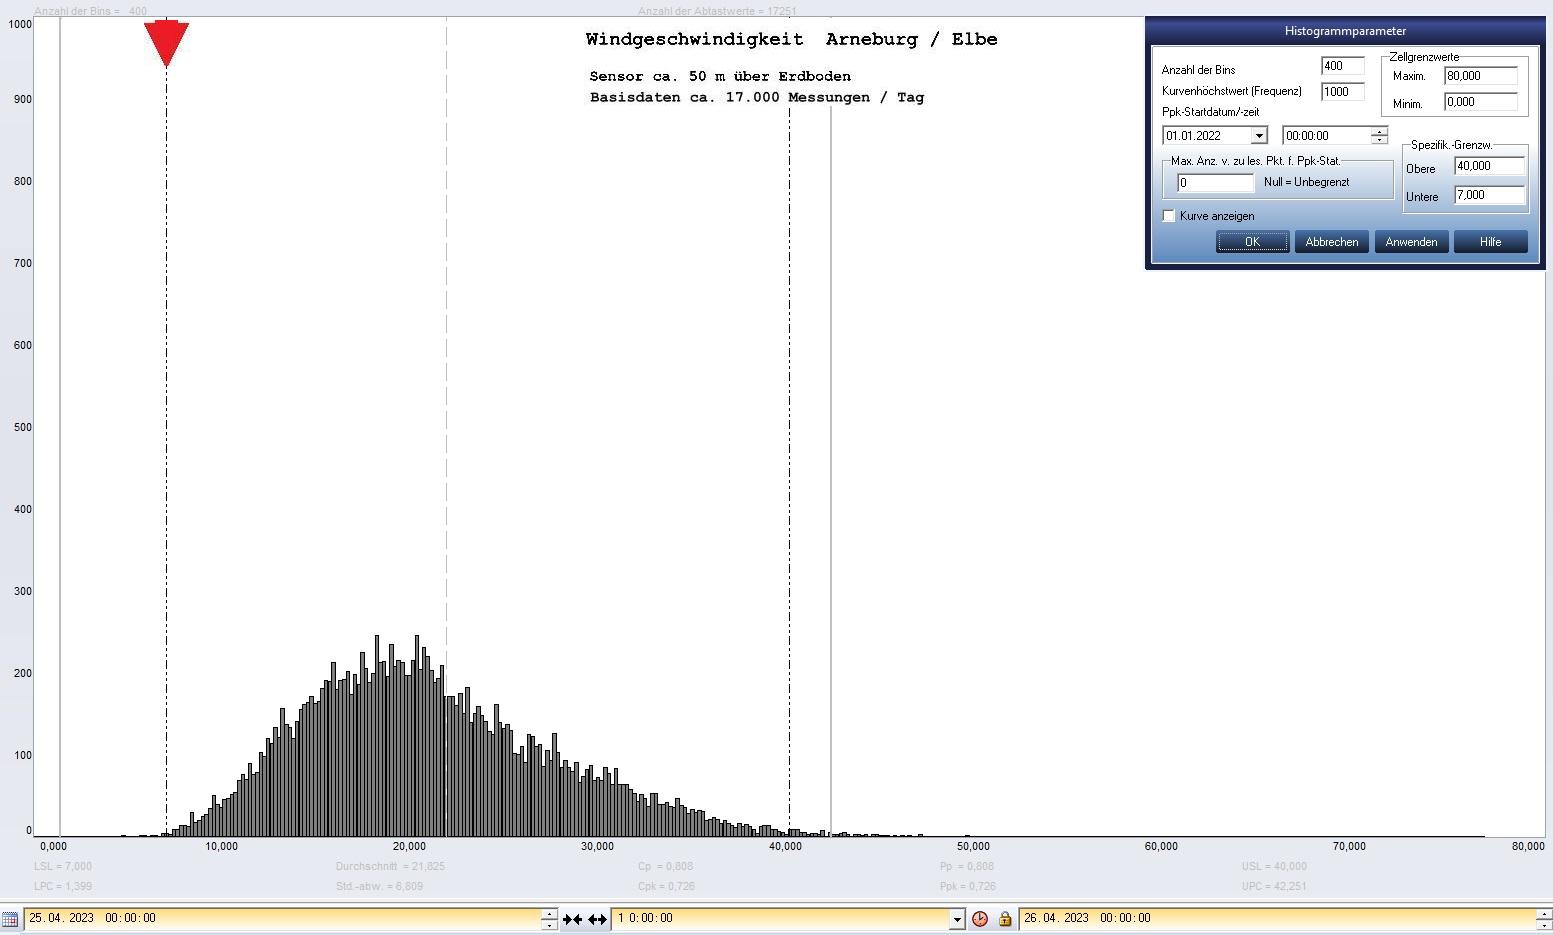 Arneburg Tages-Histogramm Winddaten, 25.04.2023
  Histogramm, Sensor auf Gebude, ca. 50 m ber Erdboden, Basis: 5s-Aufzeichnung